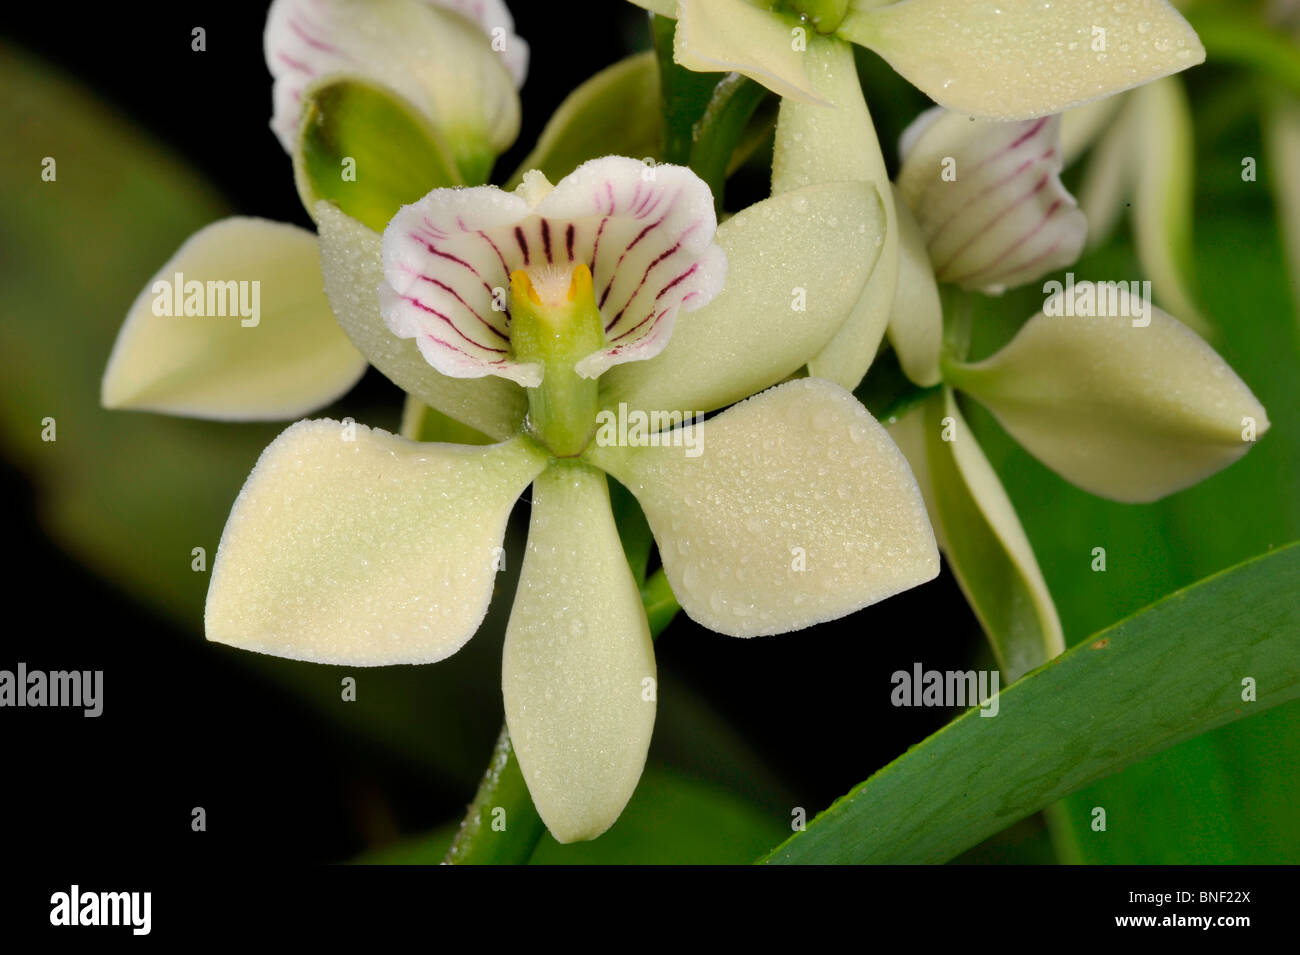 Close-up of Epidendrum radiatum orchids Stock Photo